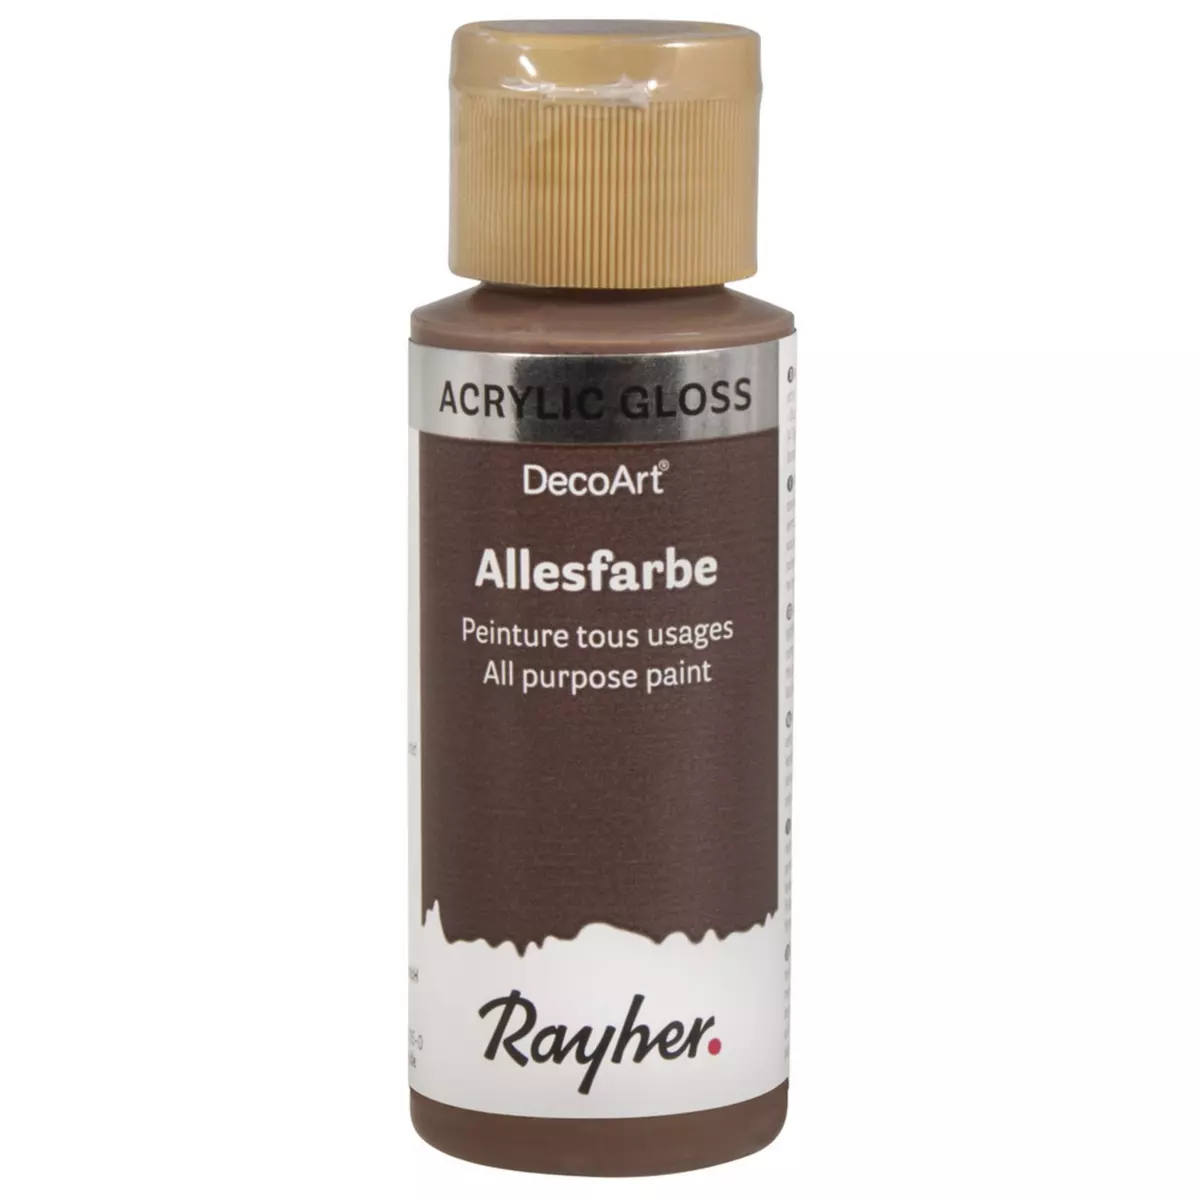 Rayher Peinture tous usages Gloss, brun café, flacon 59 ml